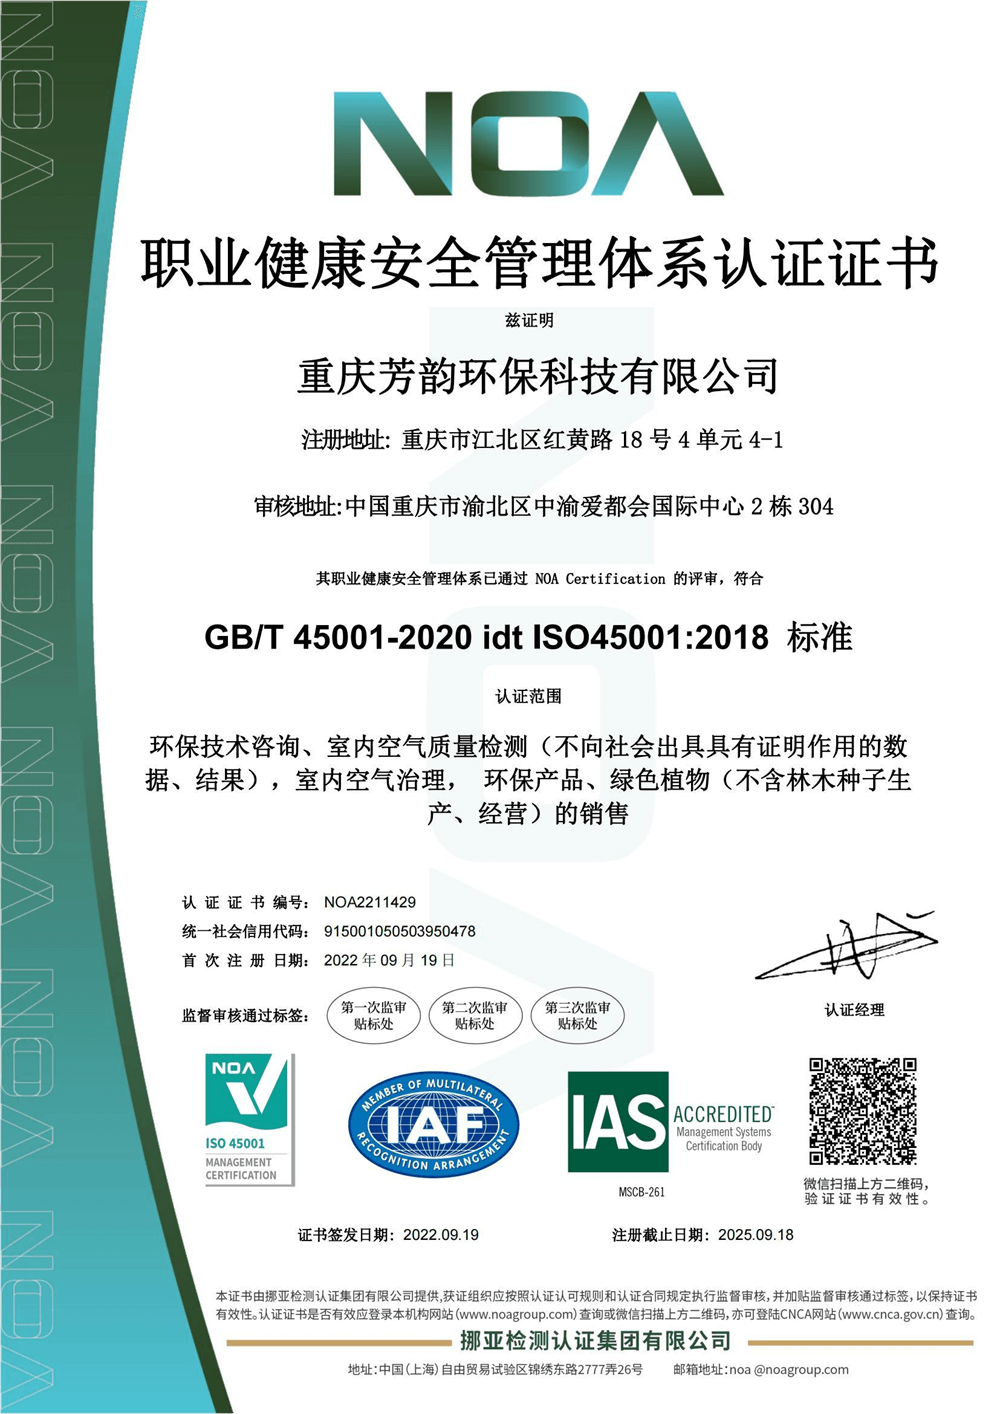 芳韵环保——职业健康安全管理体系认证证书